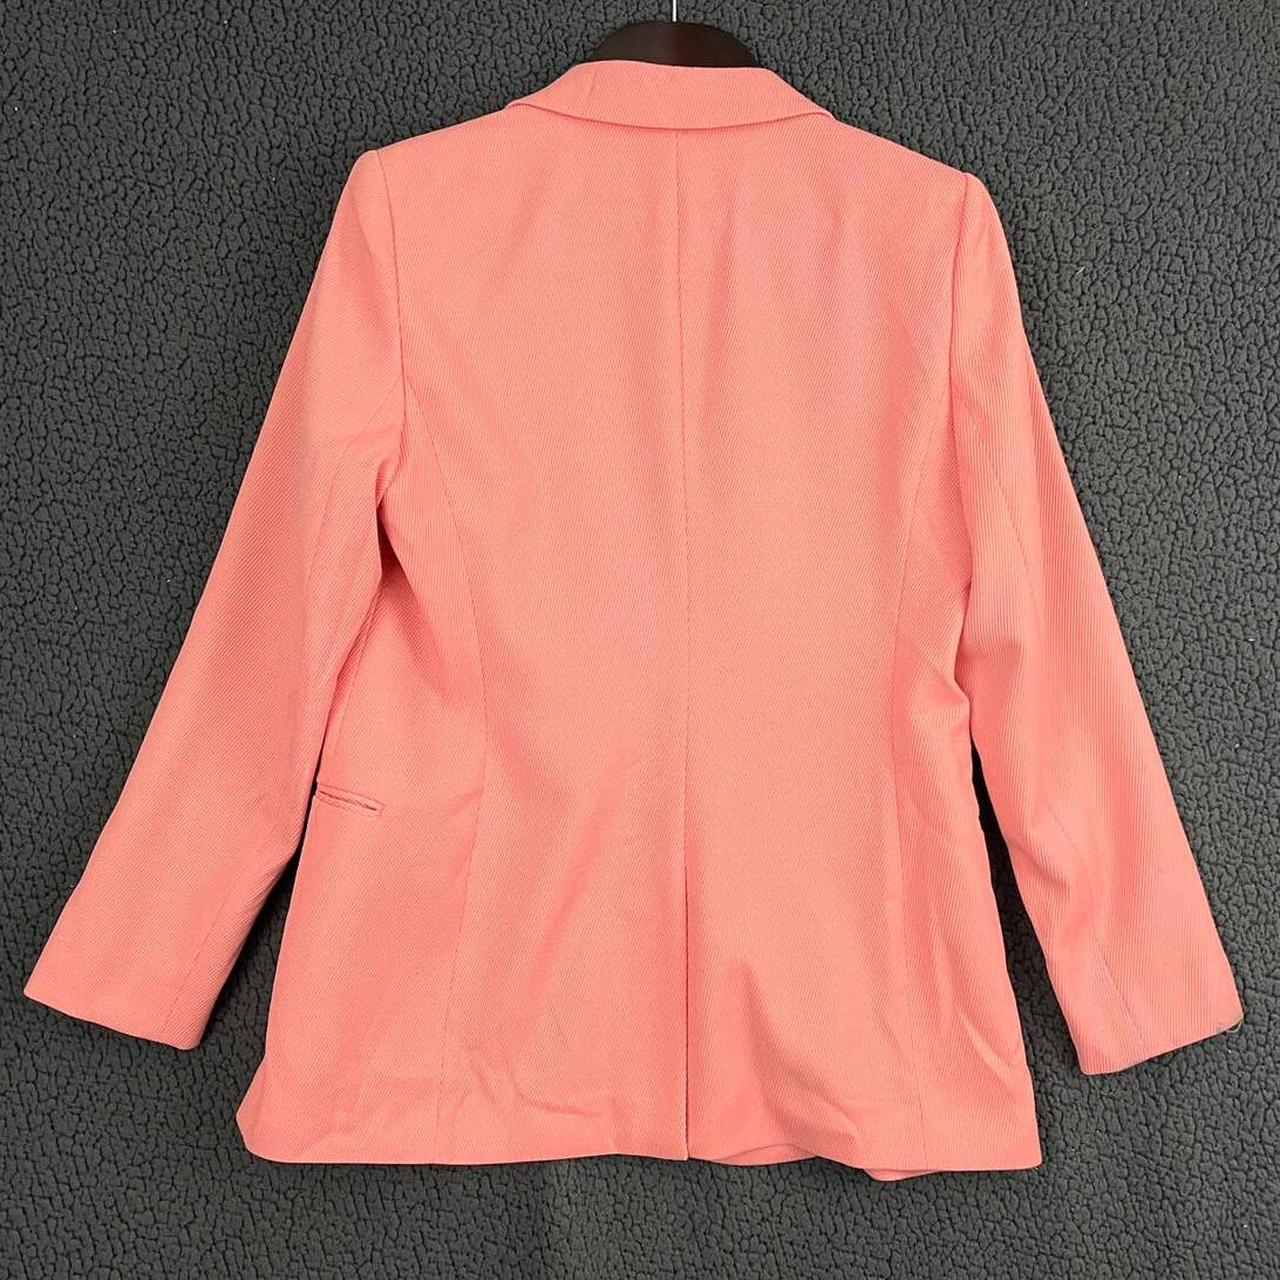 Reiss Women's Pink Jacket (2)